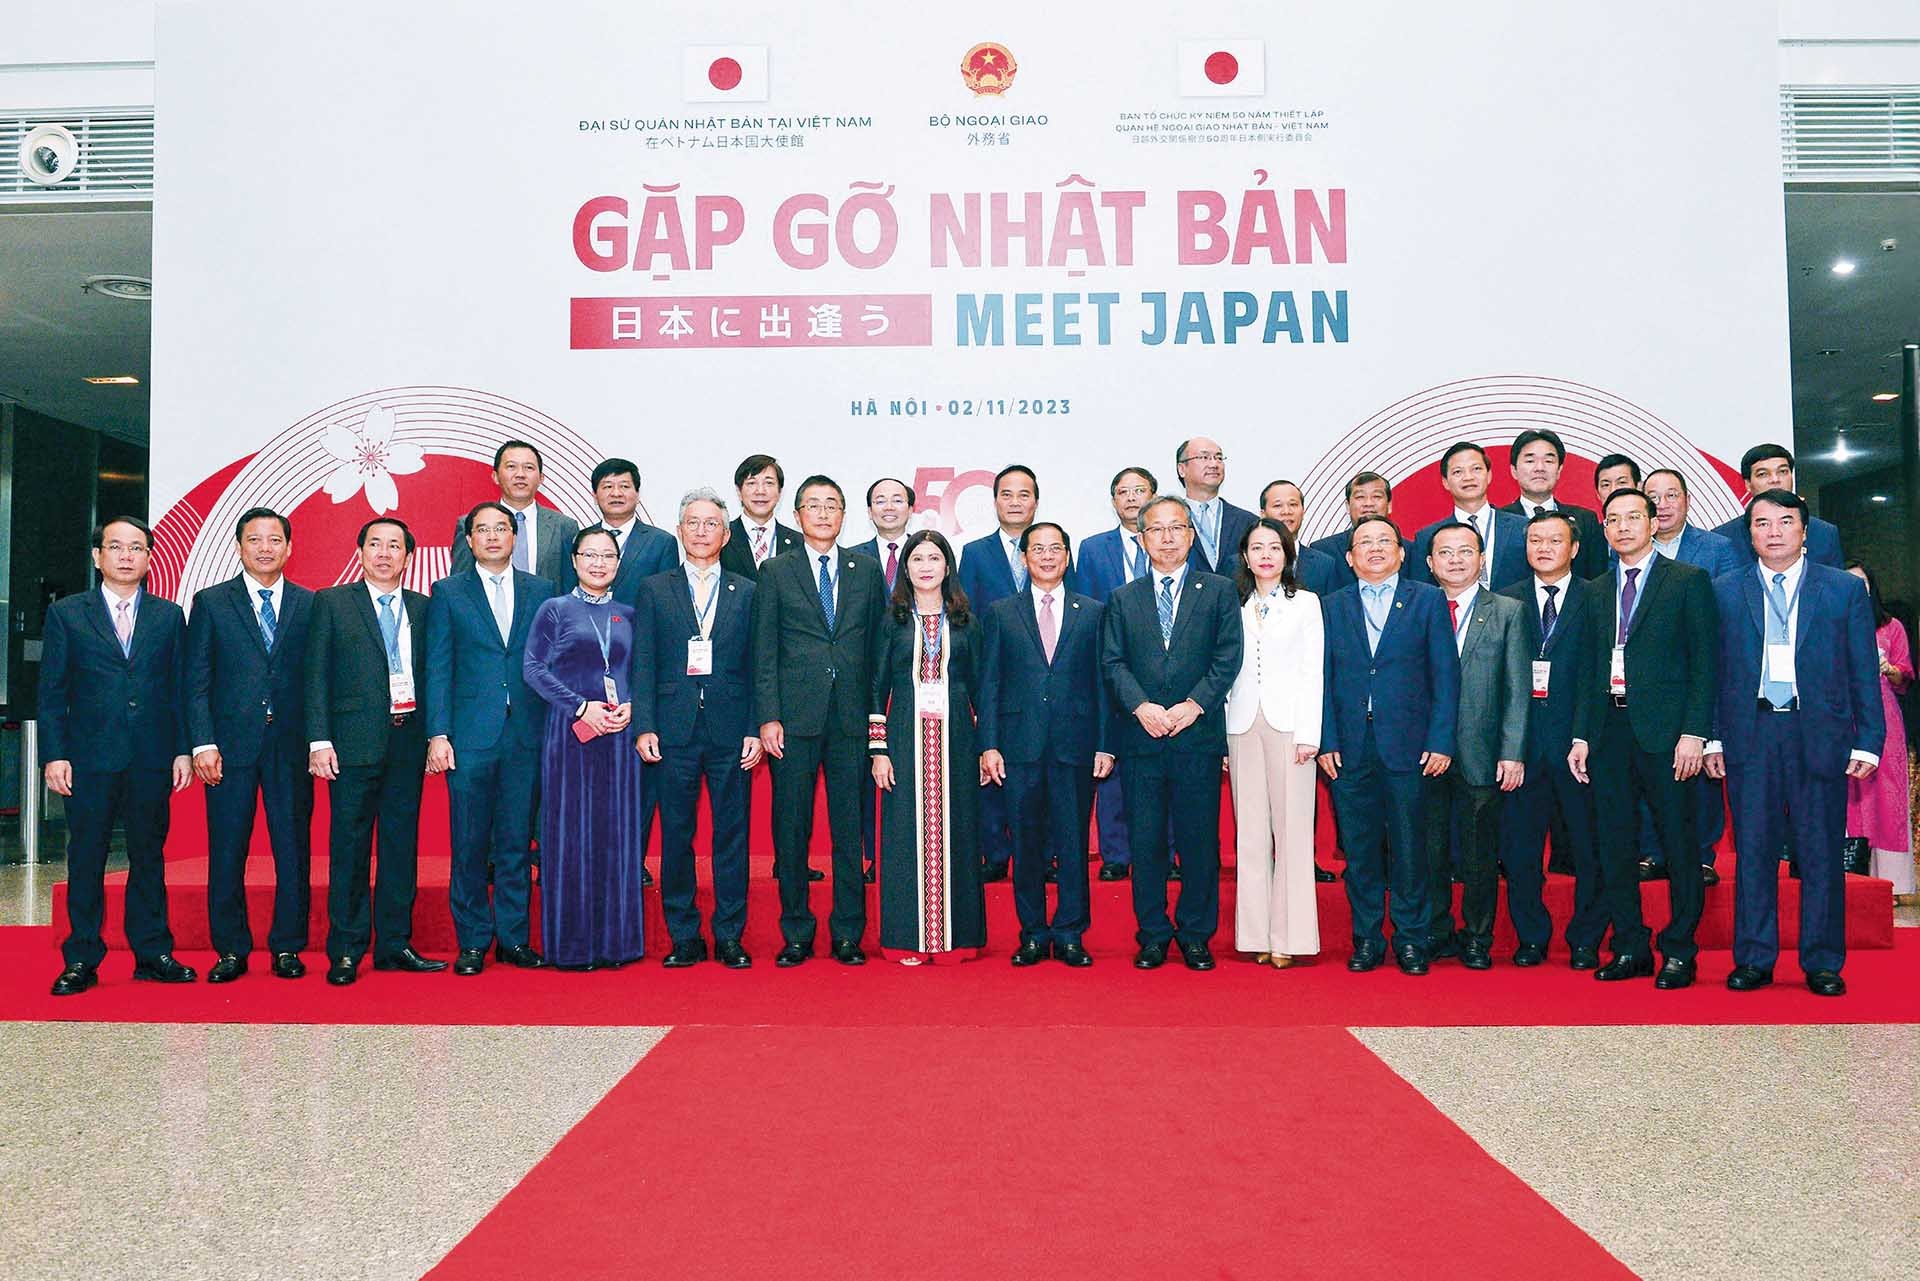 Bộ Ngoại giao phối hợp Đại sứ quán Nhật Bản tại Việt Nam và Ban Tổ chức Kỷ niệm 50 năm thiết lập quan hệ ngoại giao Việt Nam - Nhật Bản tổ chức Hội nghị “Gặp gỡ Nhật Bản 2023” (Meet Japan 2023), tháng 11/2023.